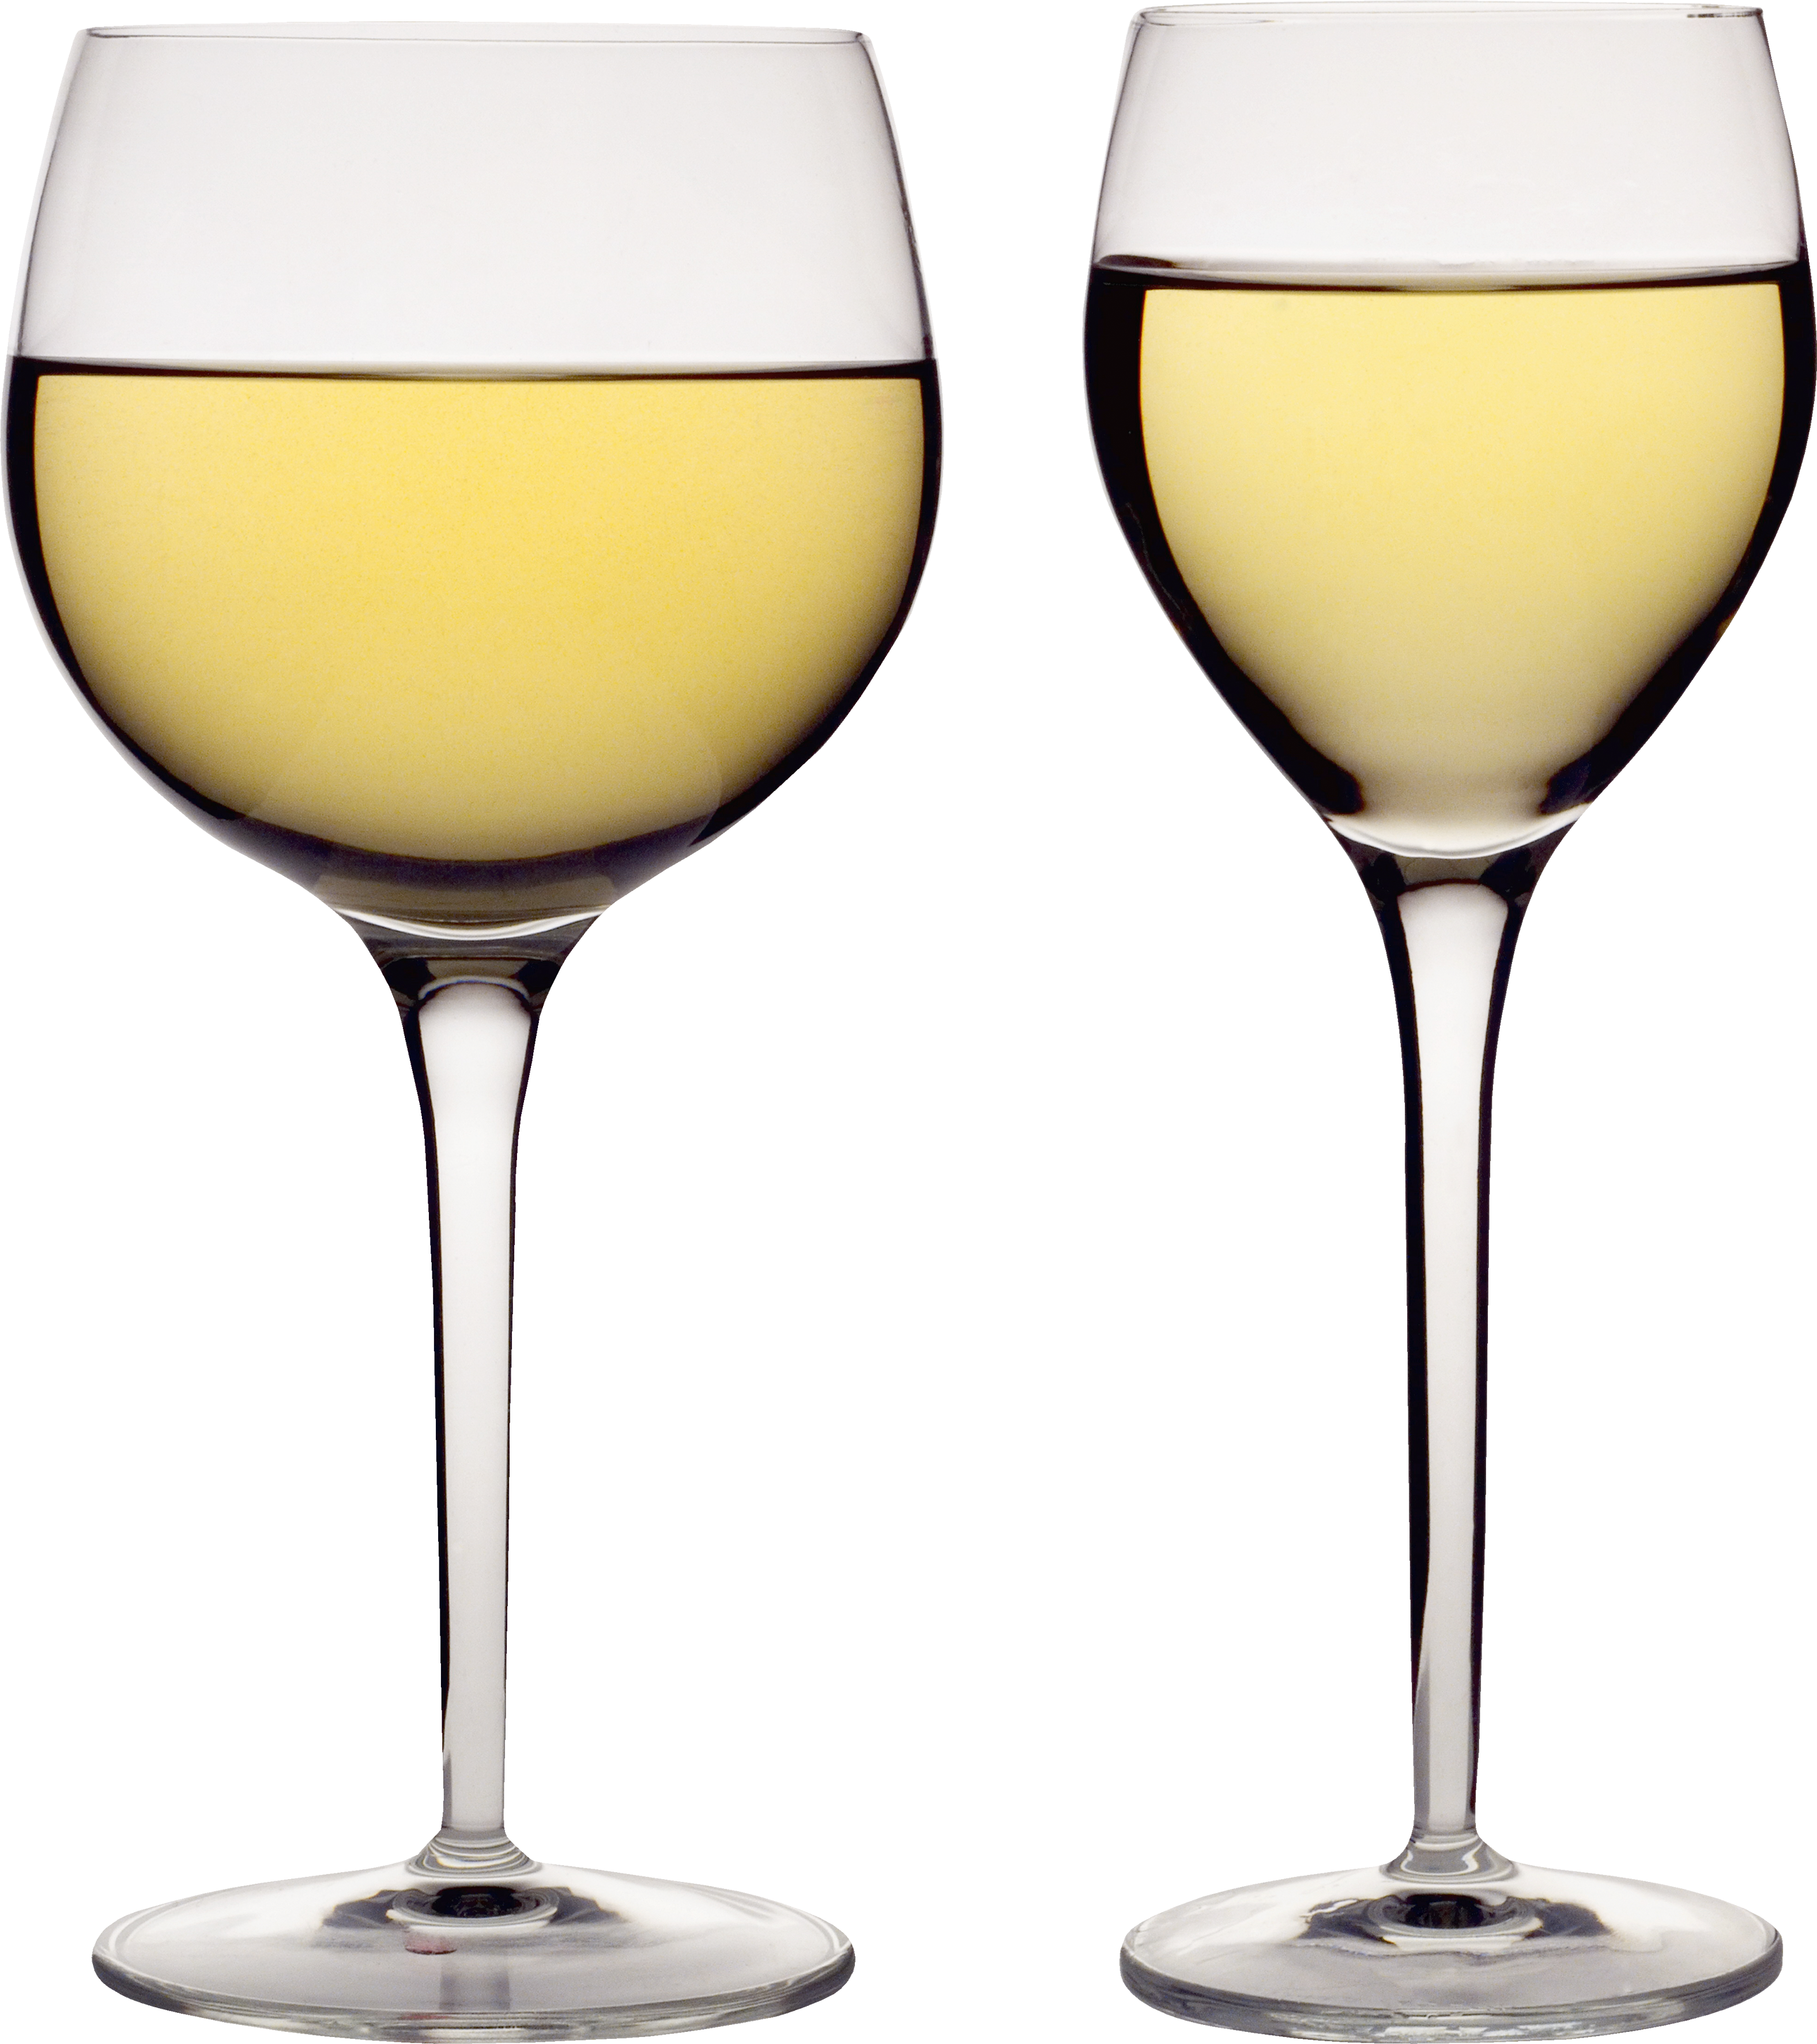 Download Transparent Background Wine Glasses Png